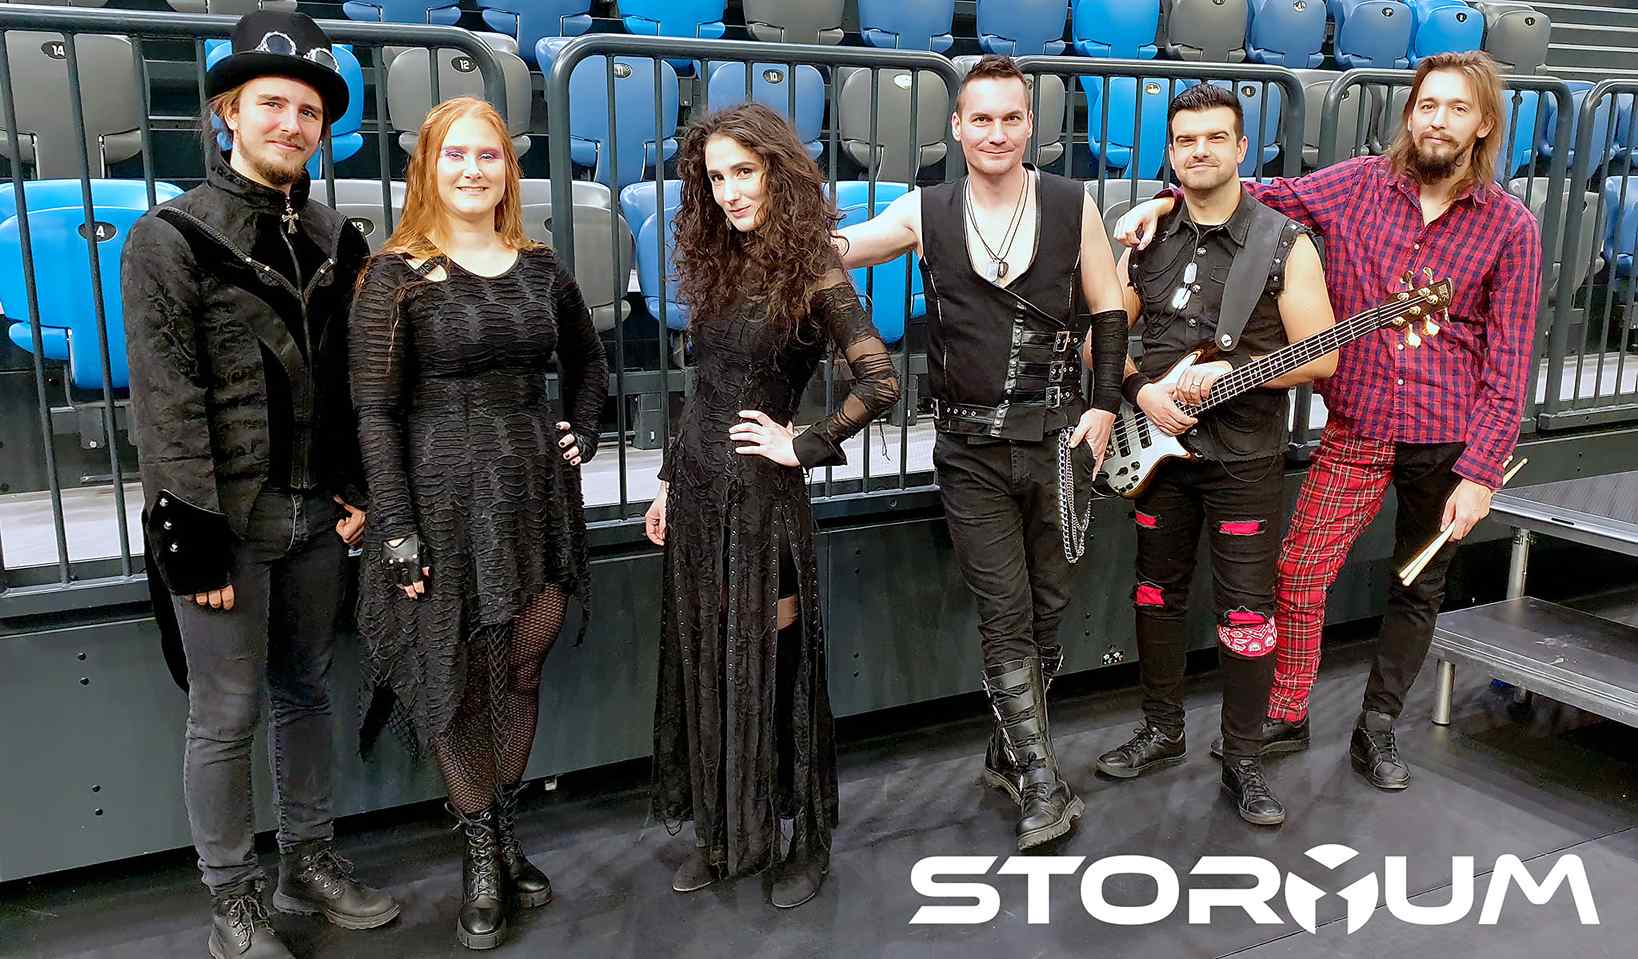 Storyum - Megjelent a felvidéki szimfonikus elektro-metal zenekar első magyar nyelvű albuma!